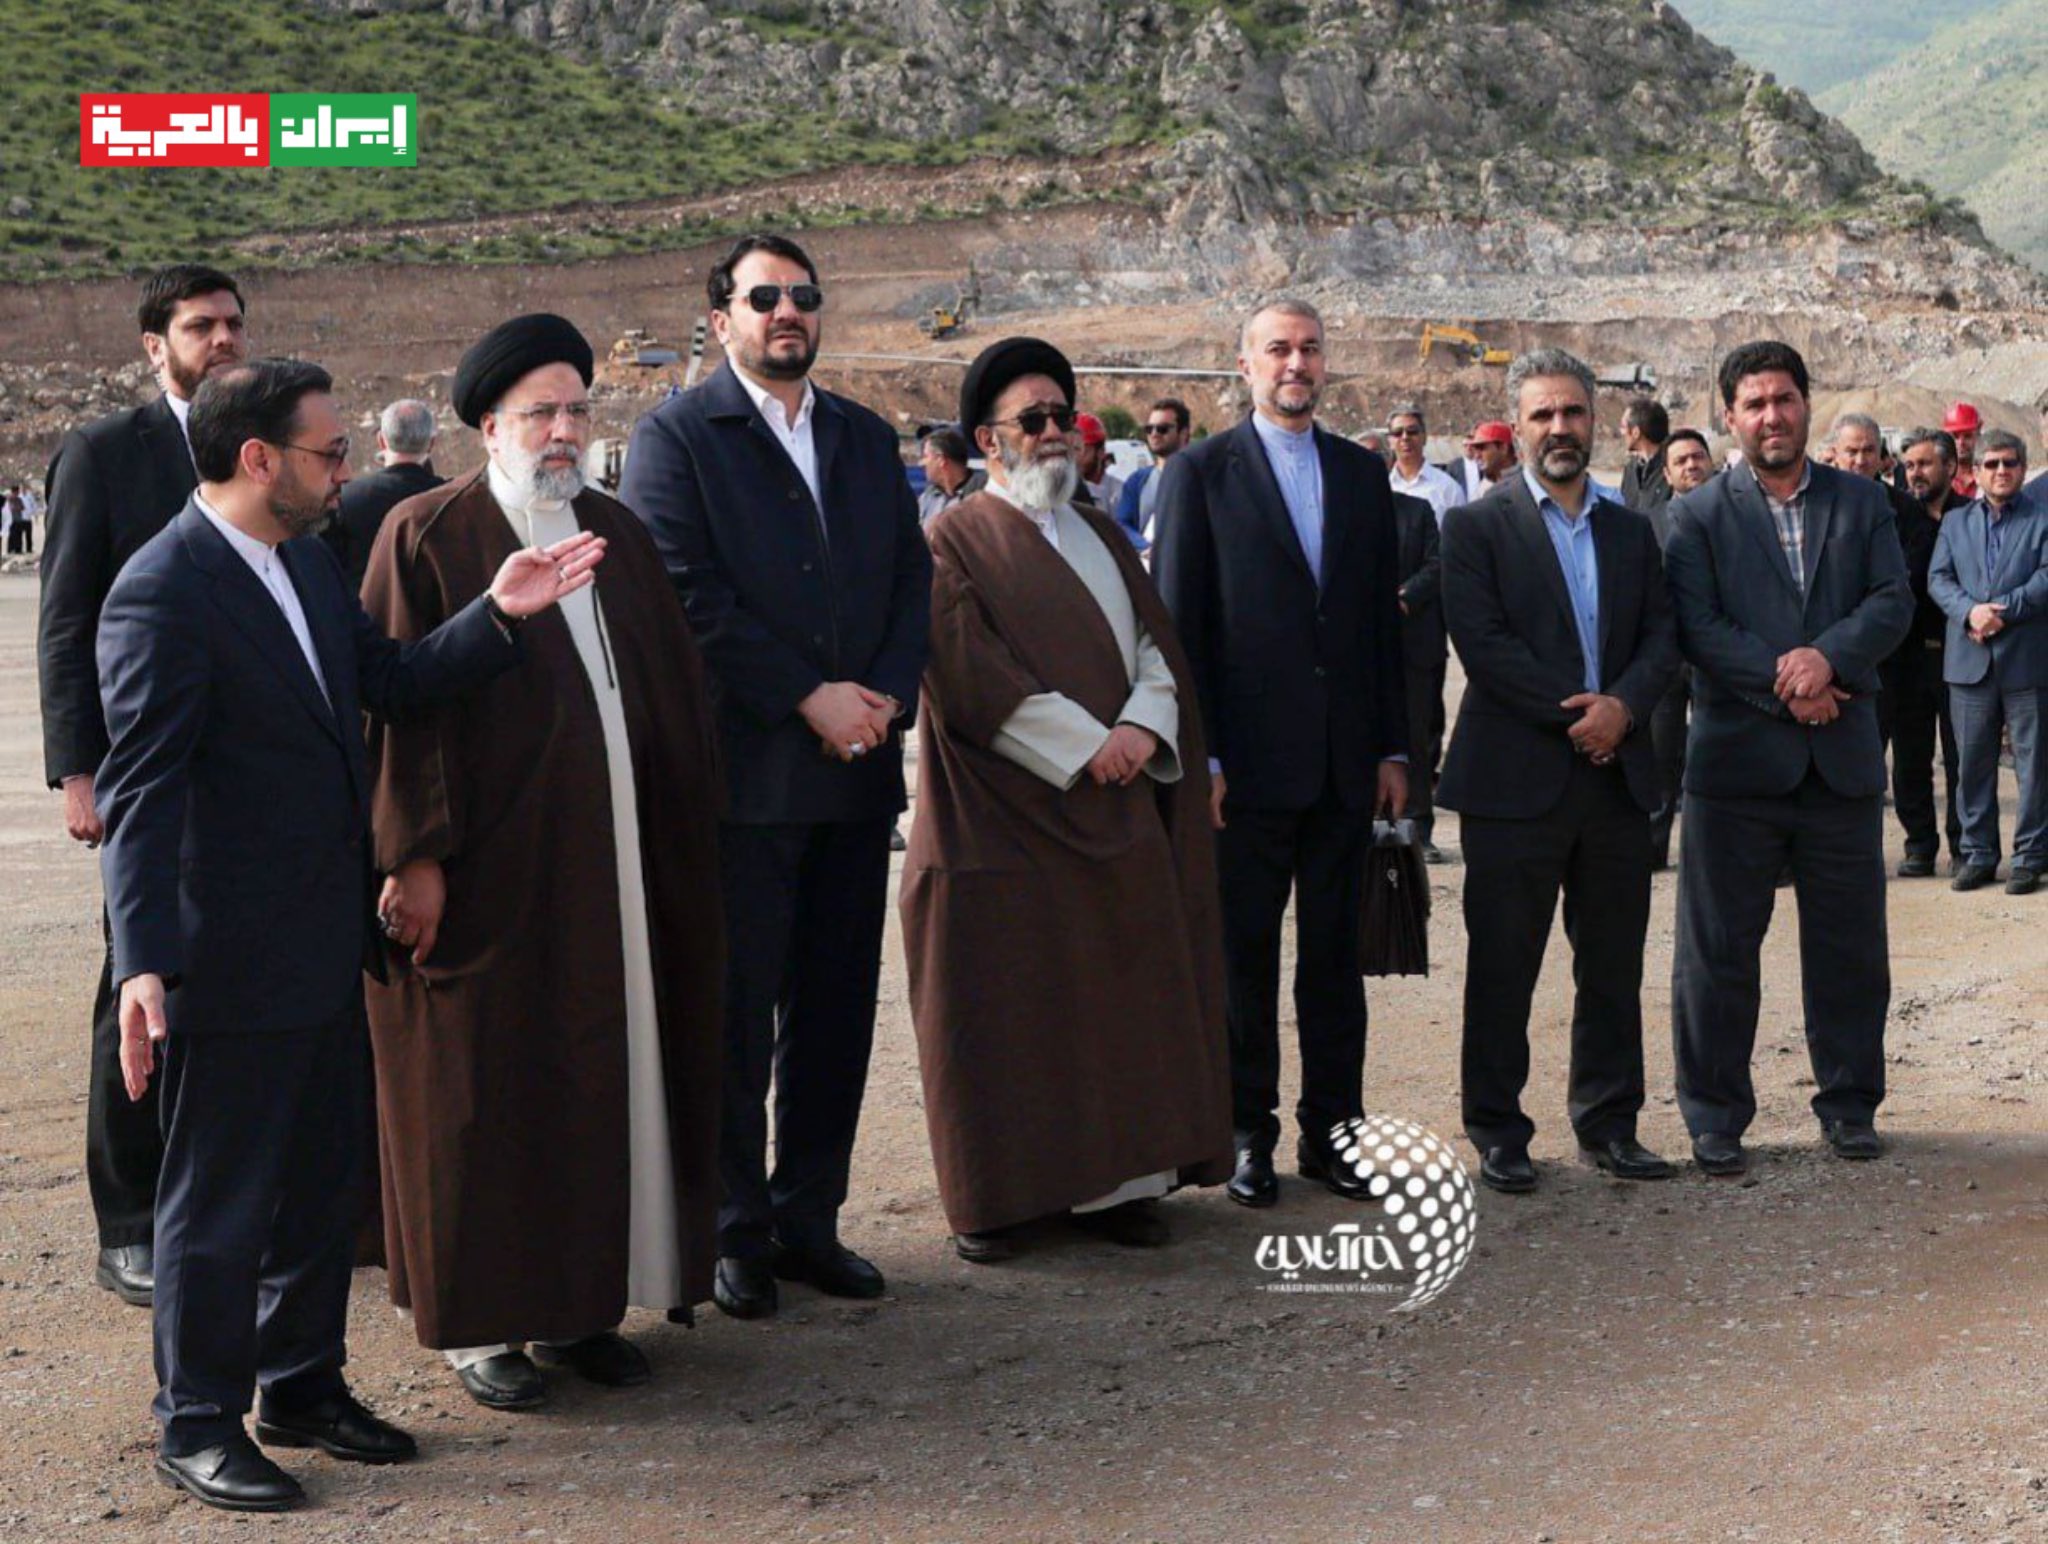 بالصور | آخر لقطات لرئيس جمهورية ايران قبل حادثة المروحية